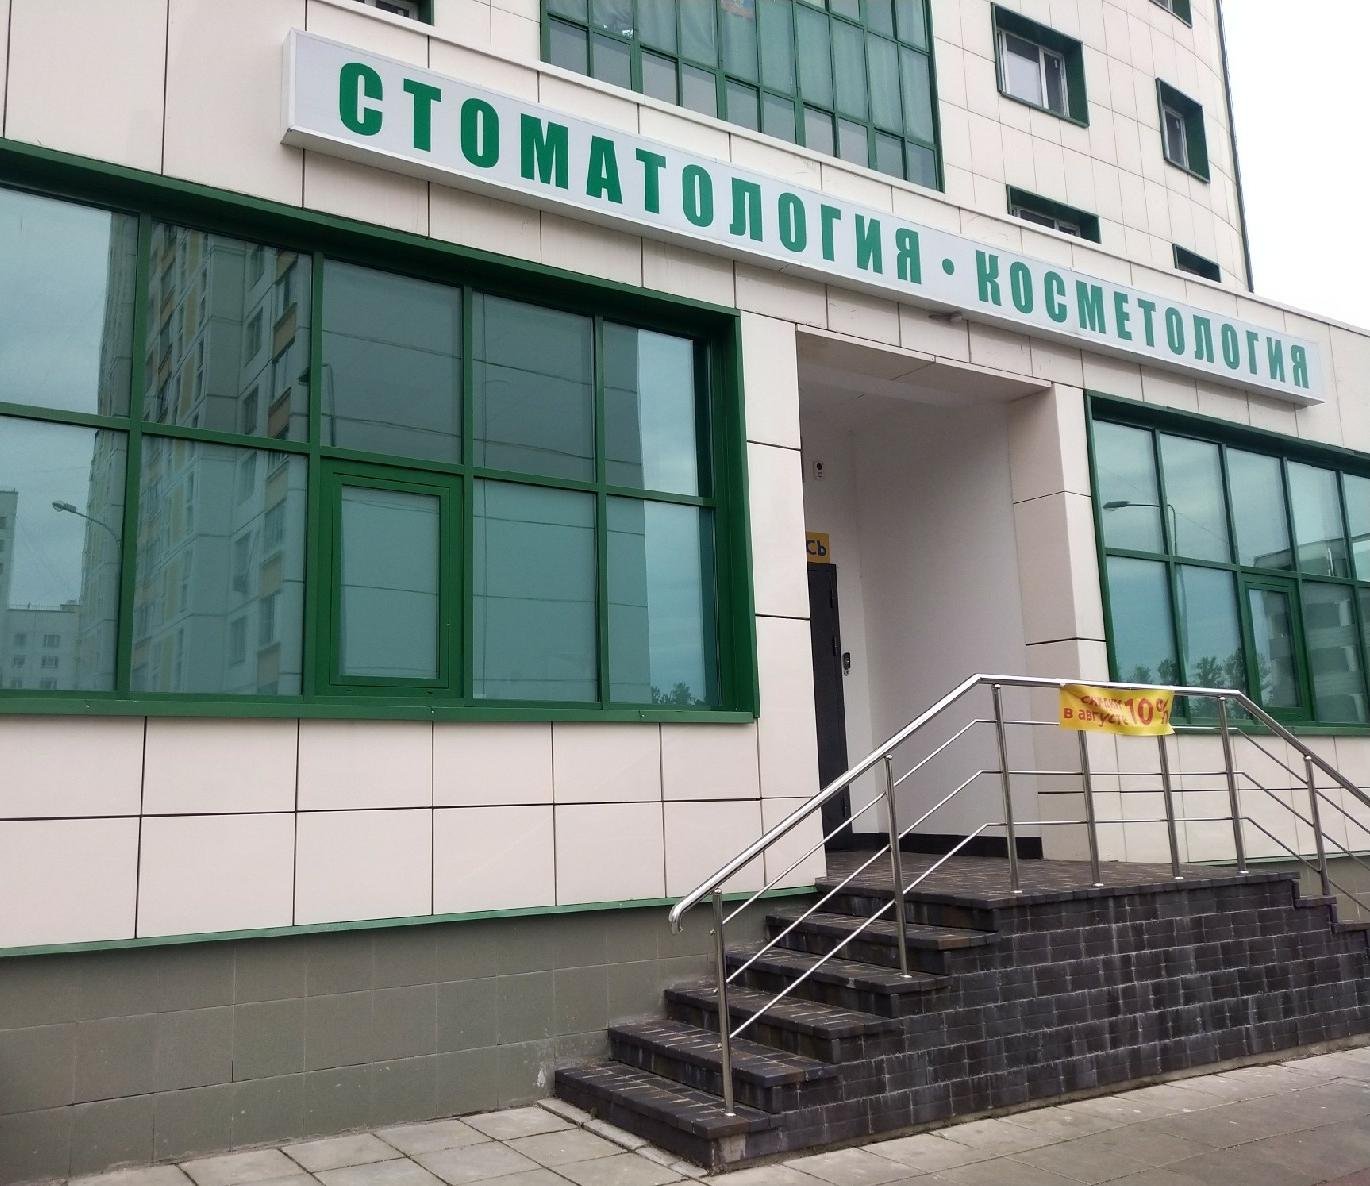 Астра, клиника стоматологии и косметологии, Зеленоград, к848, 1 этаж